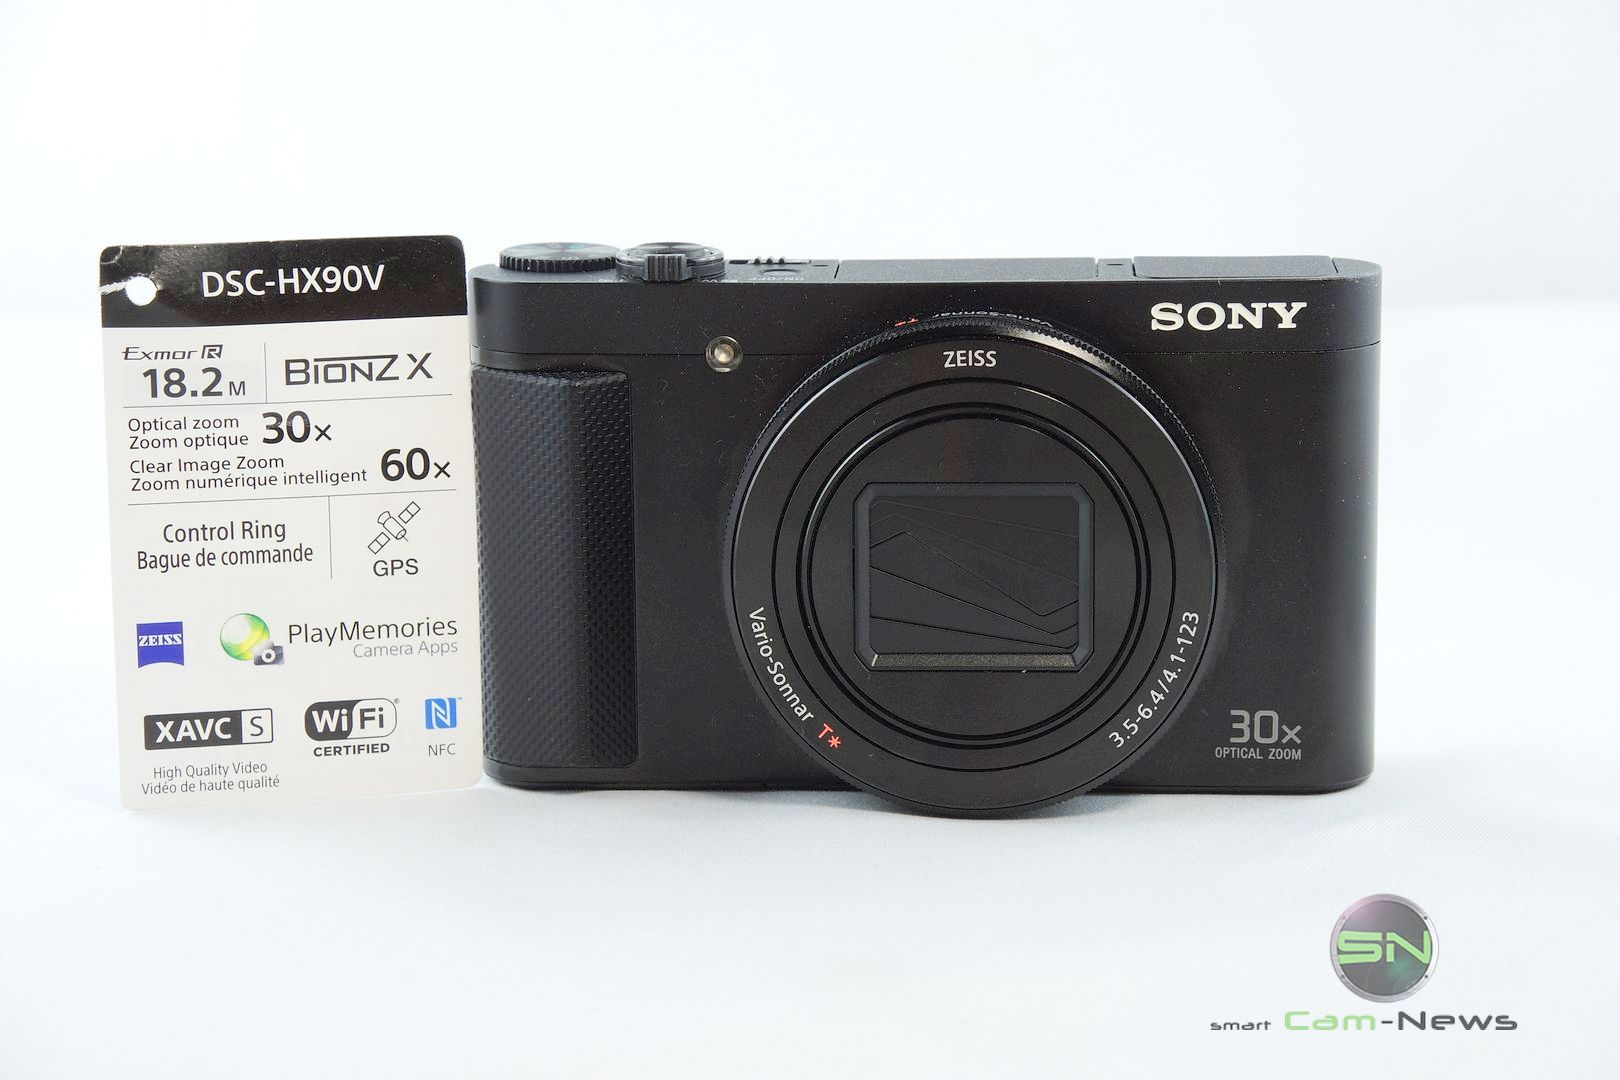 Sony DSC HX90V – Mega Reisezoom Kamera